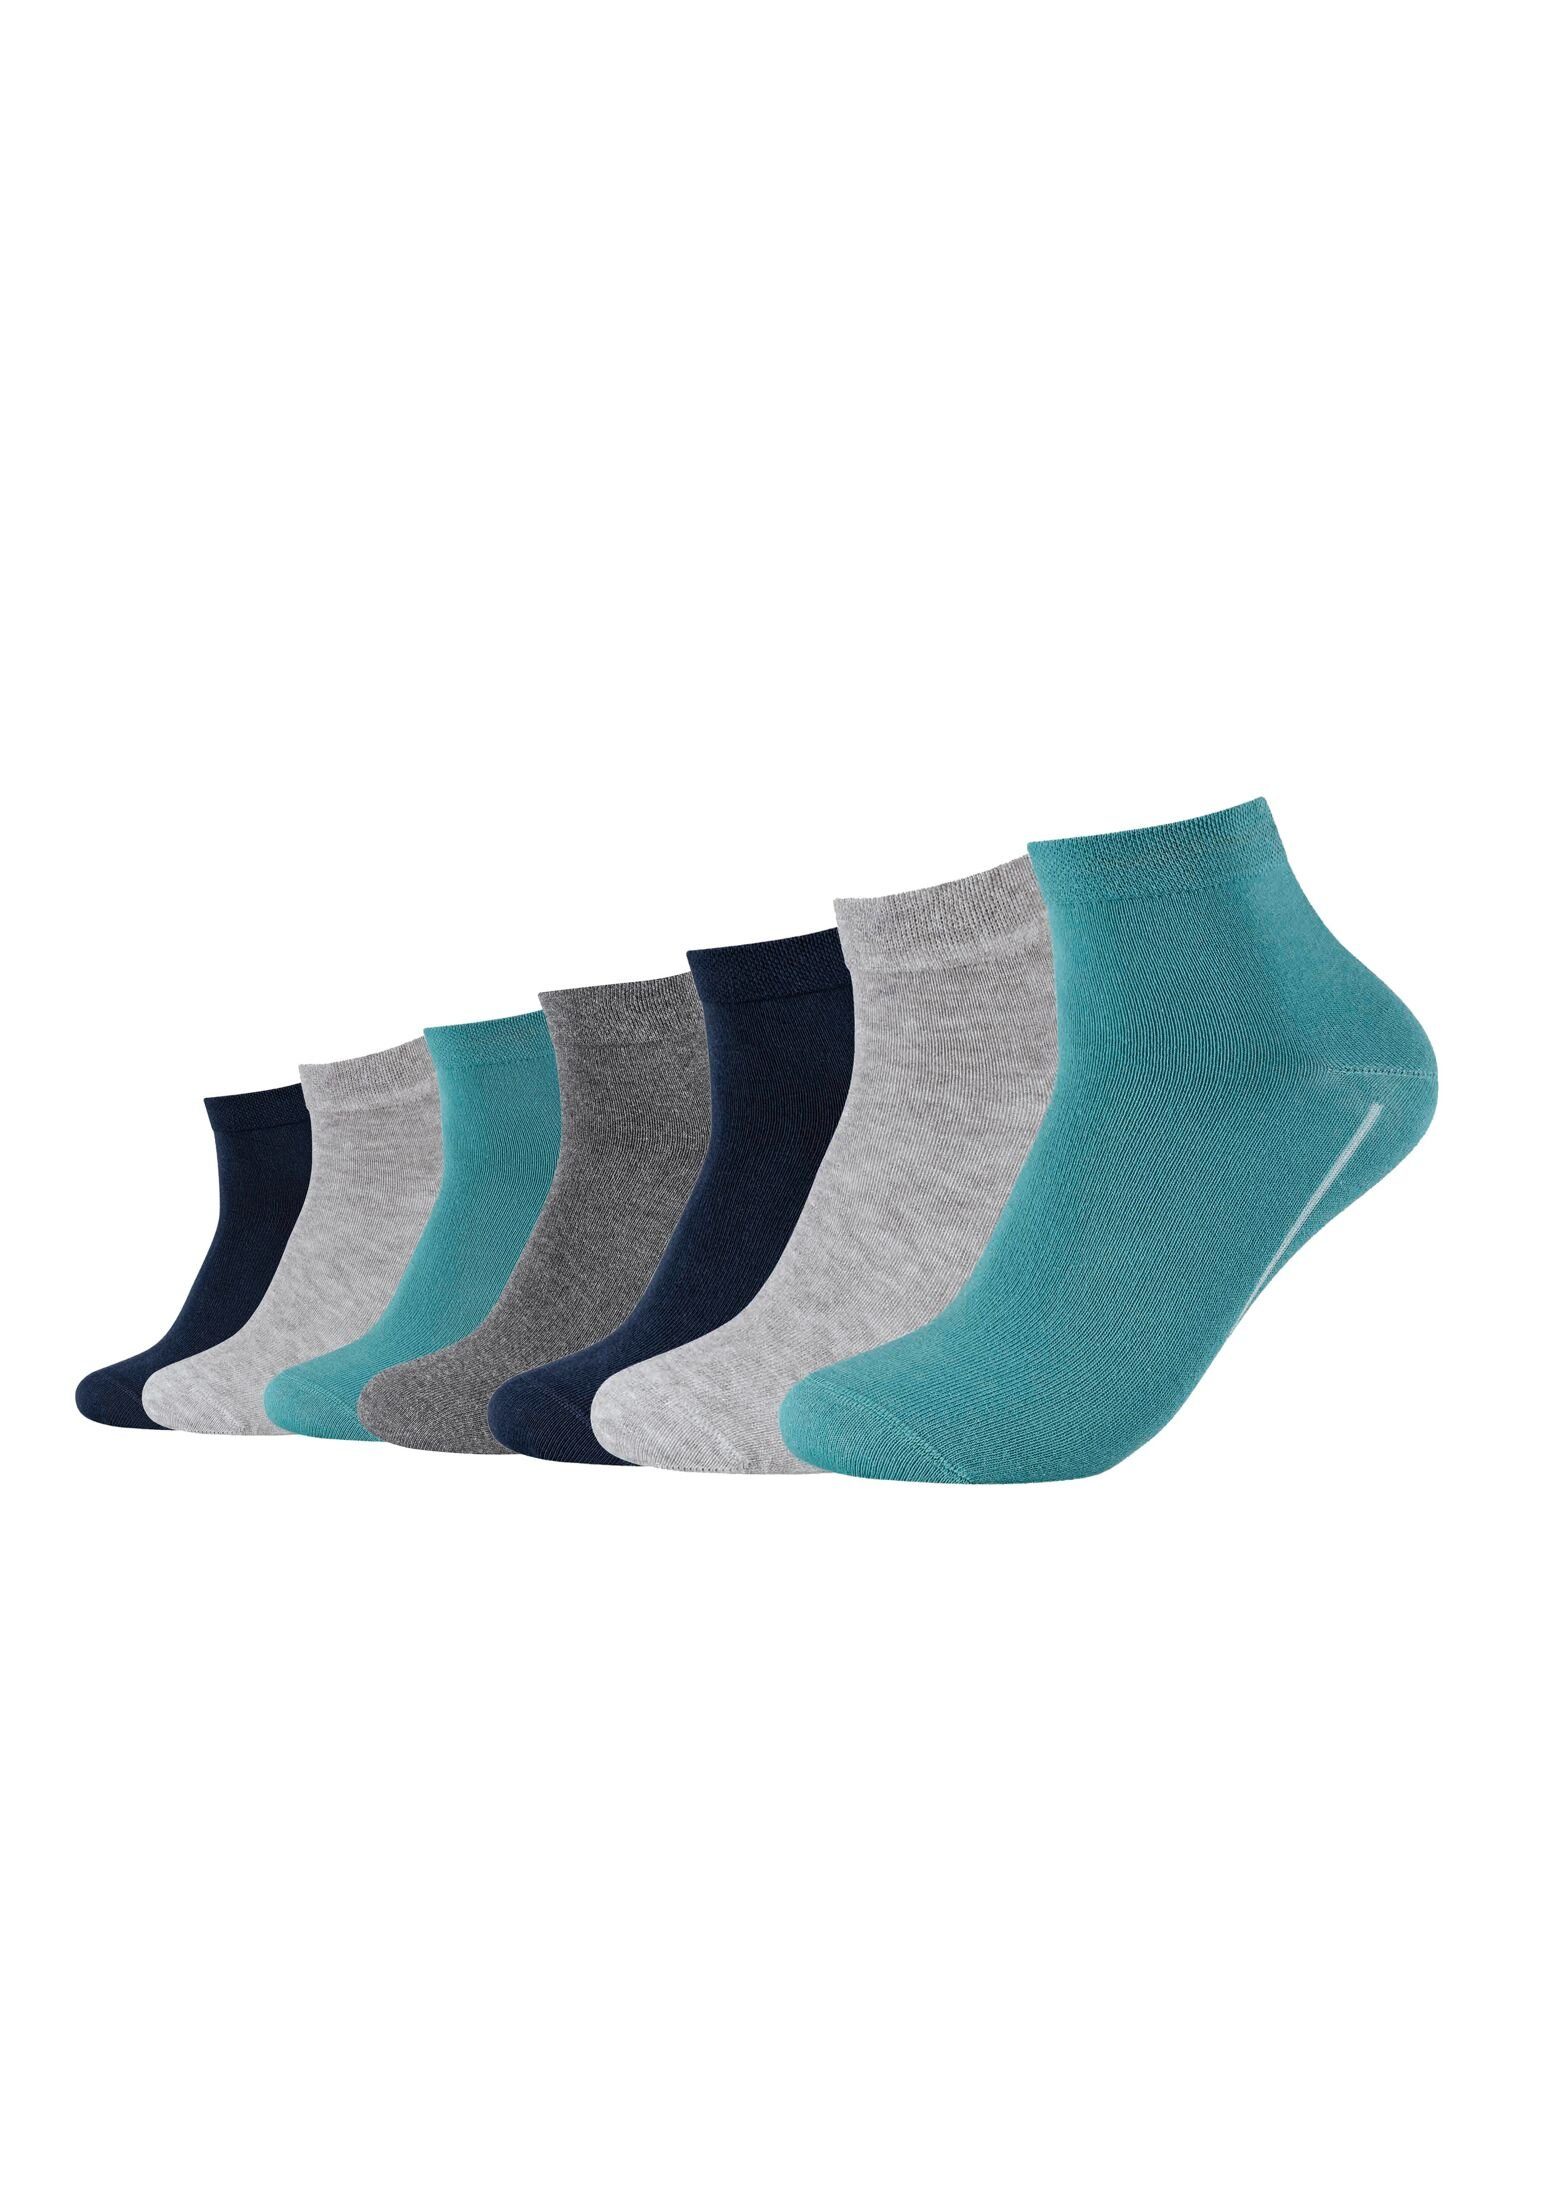 Klimaregulierend: weichem atmungsaktiv ca-soft Camano Komfortbund, (7-Paar) dank mit Baumwollanteil Socken hohem